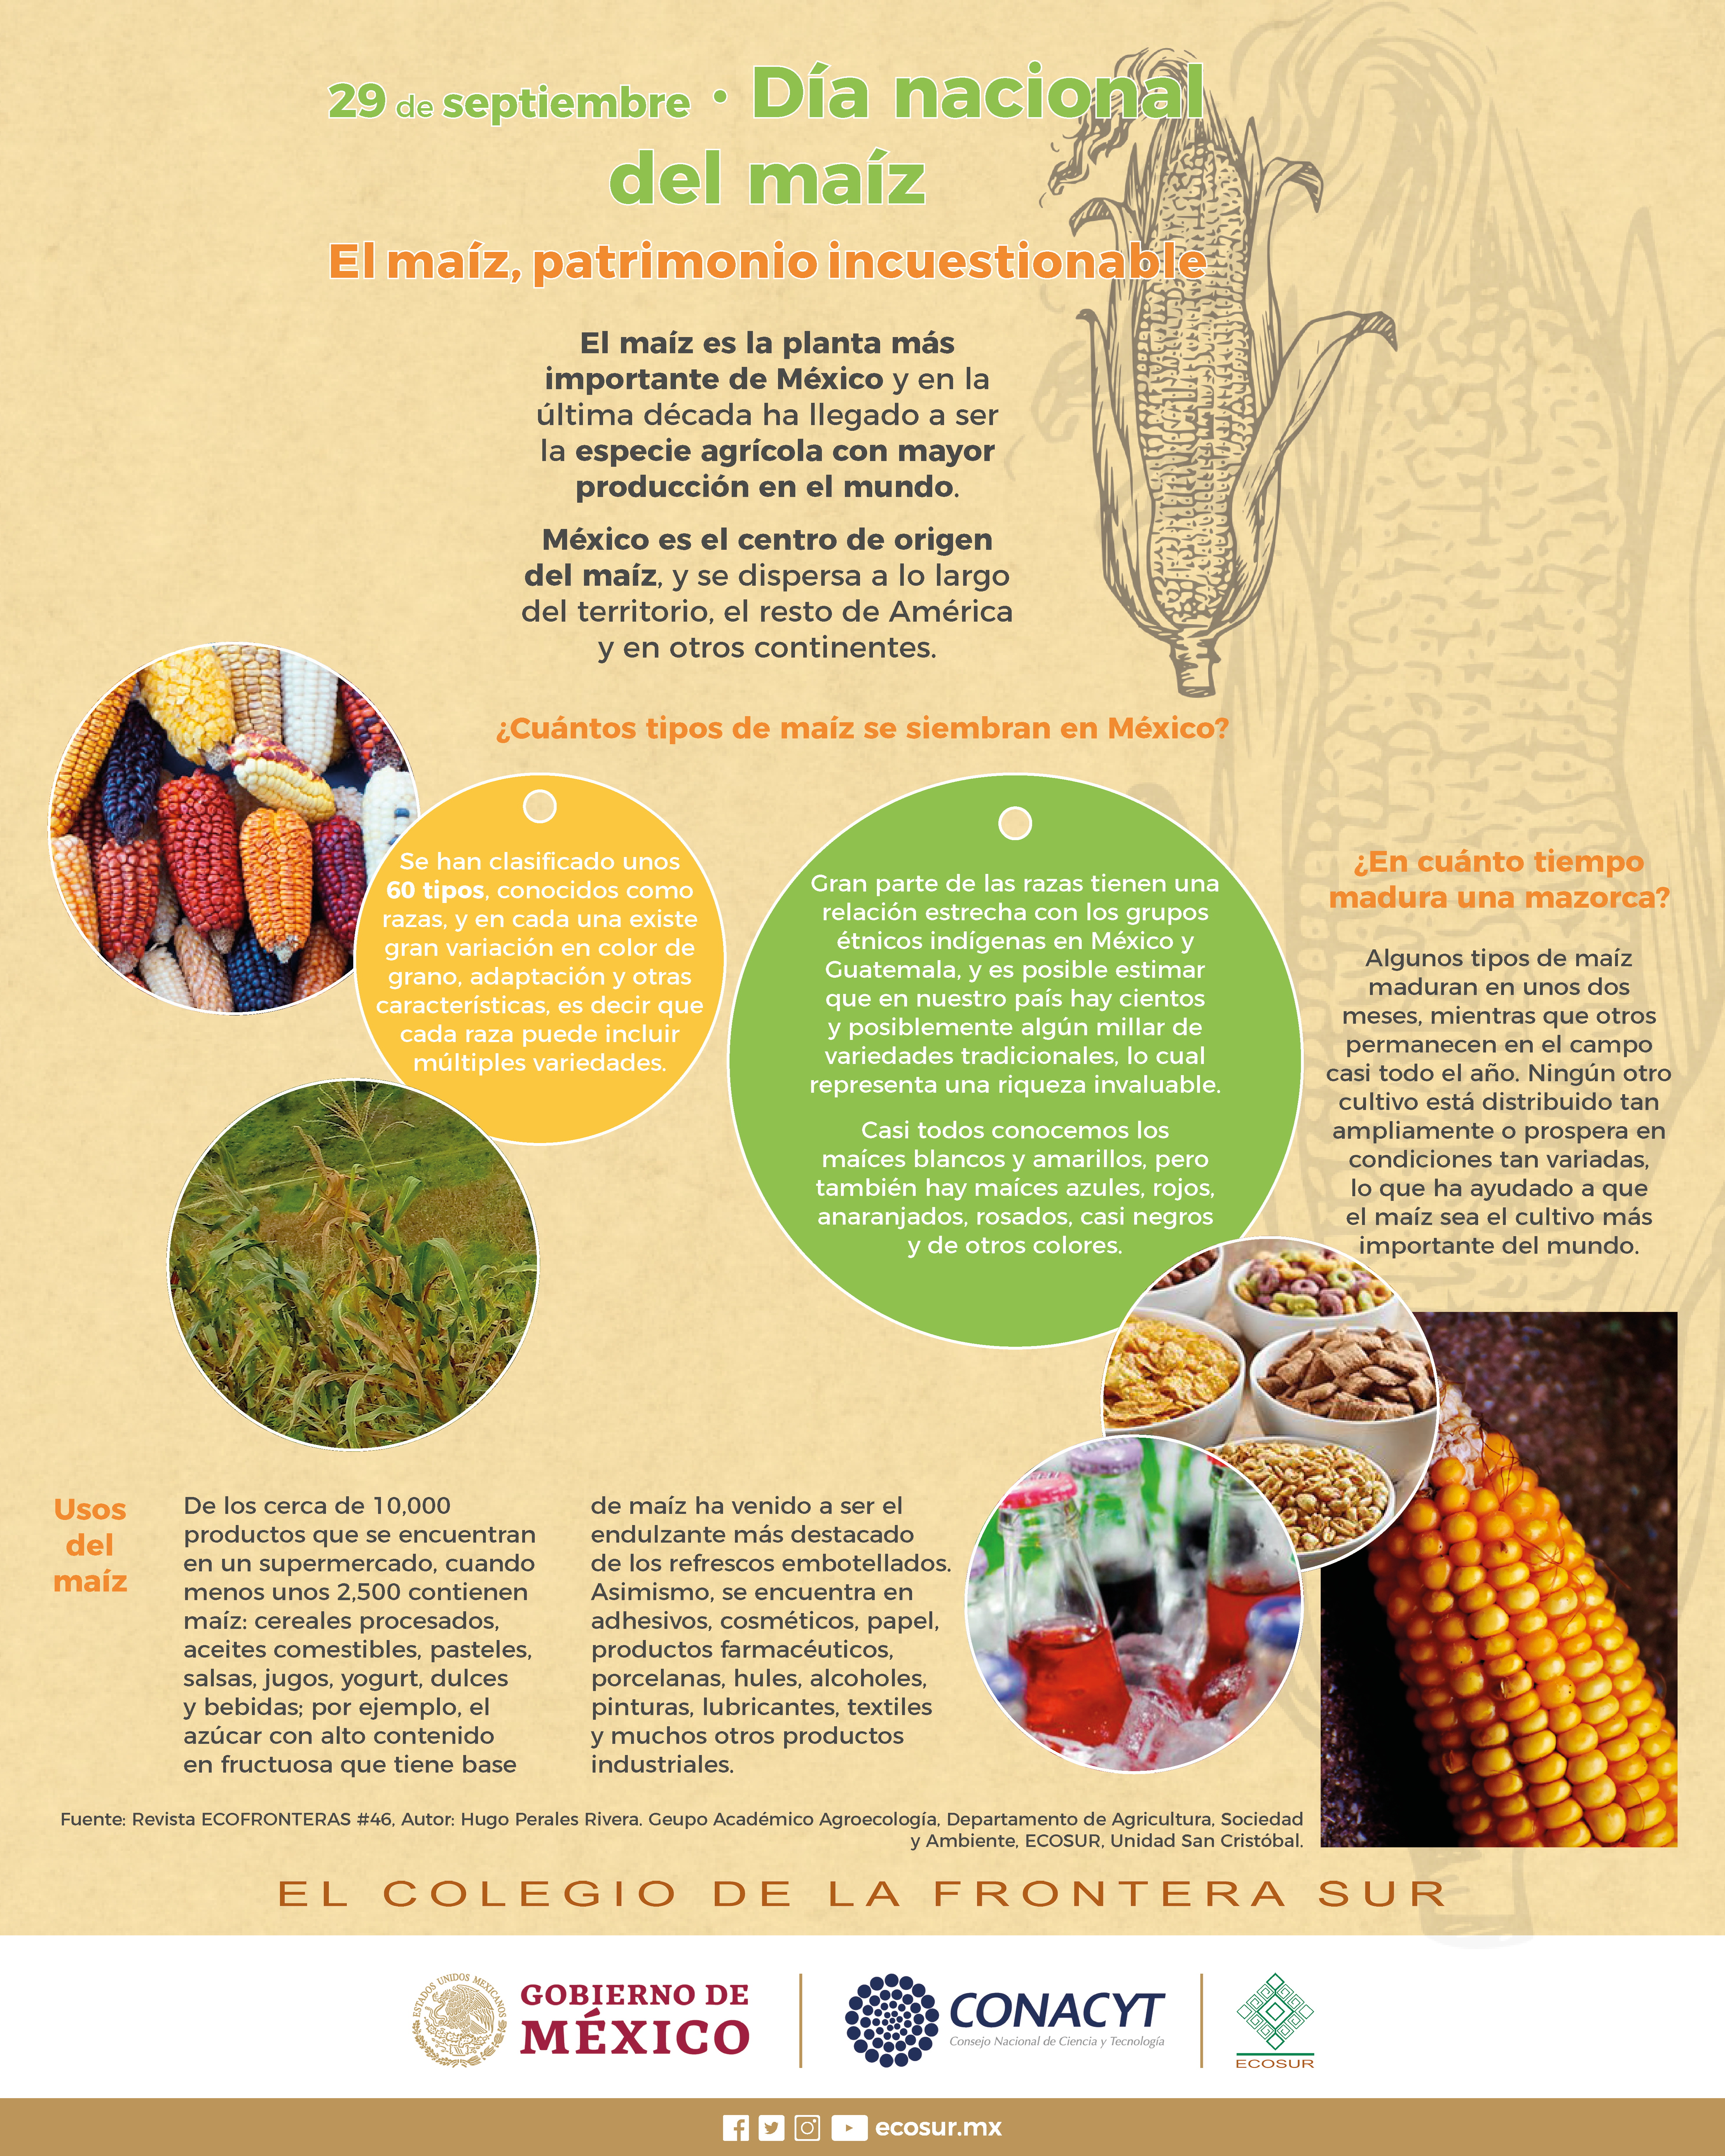 29 de septiembre día nacional del maiz